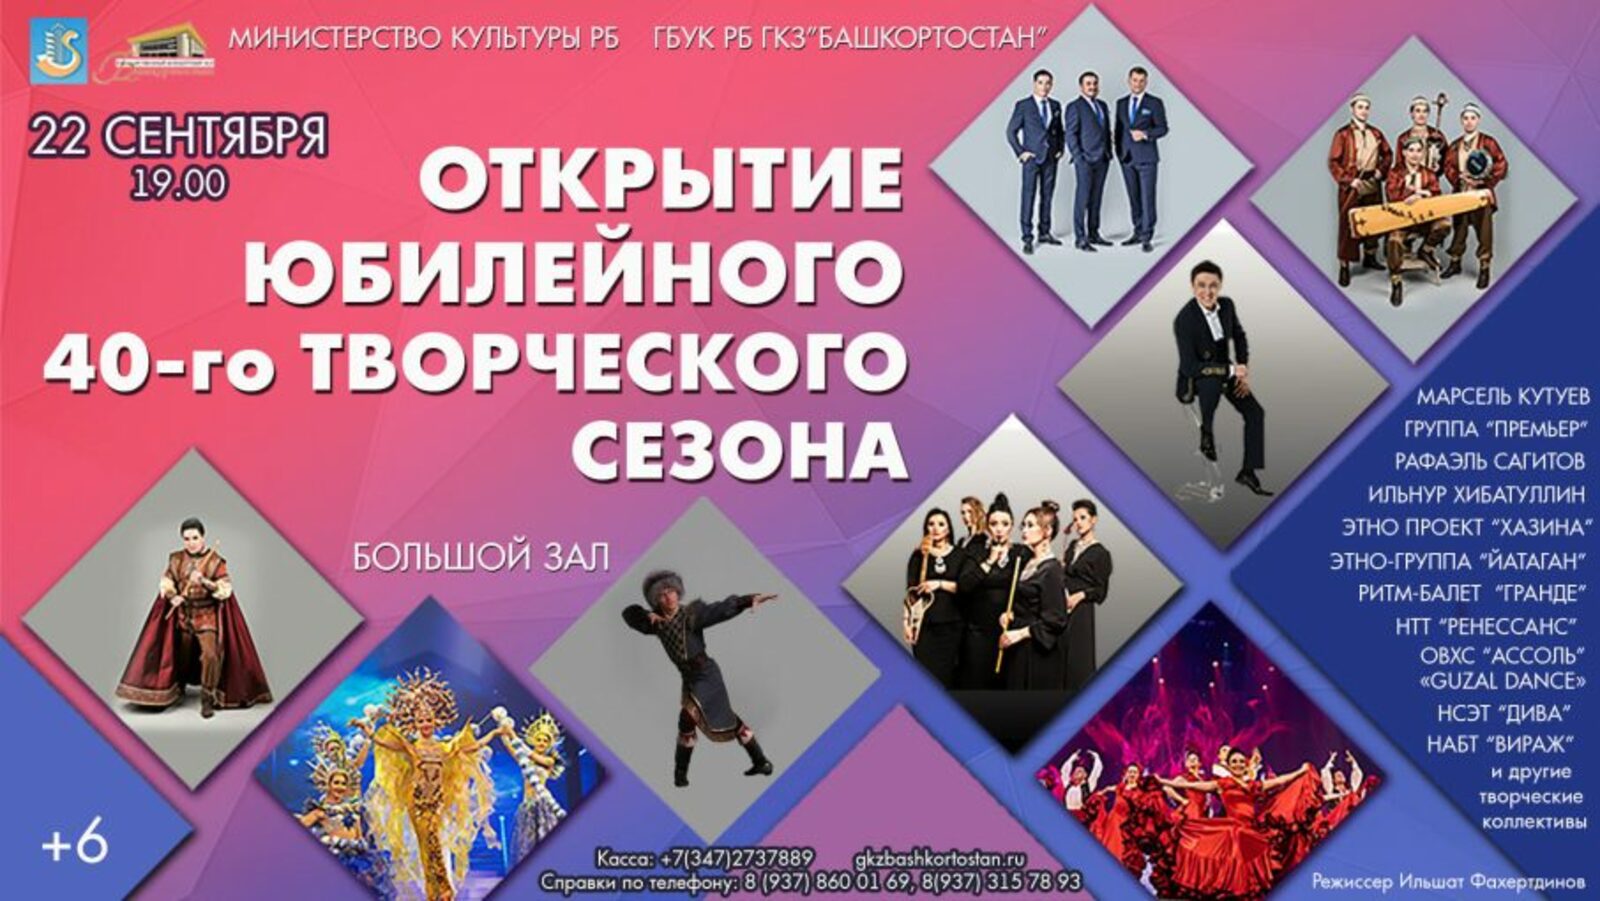 Государственный концертный зал «Башкортостан» приглашает на праздничный концерт